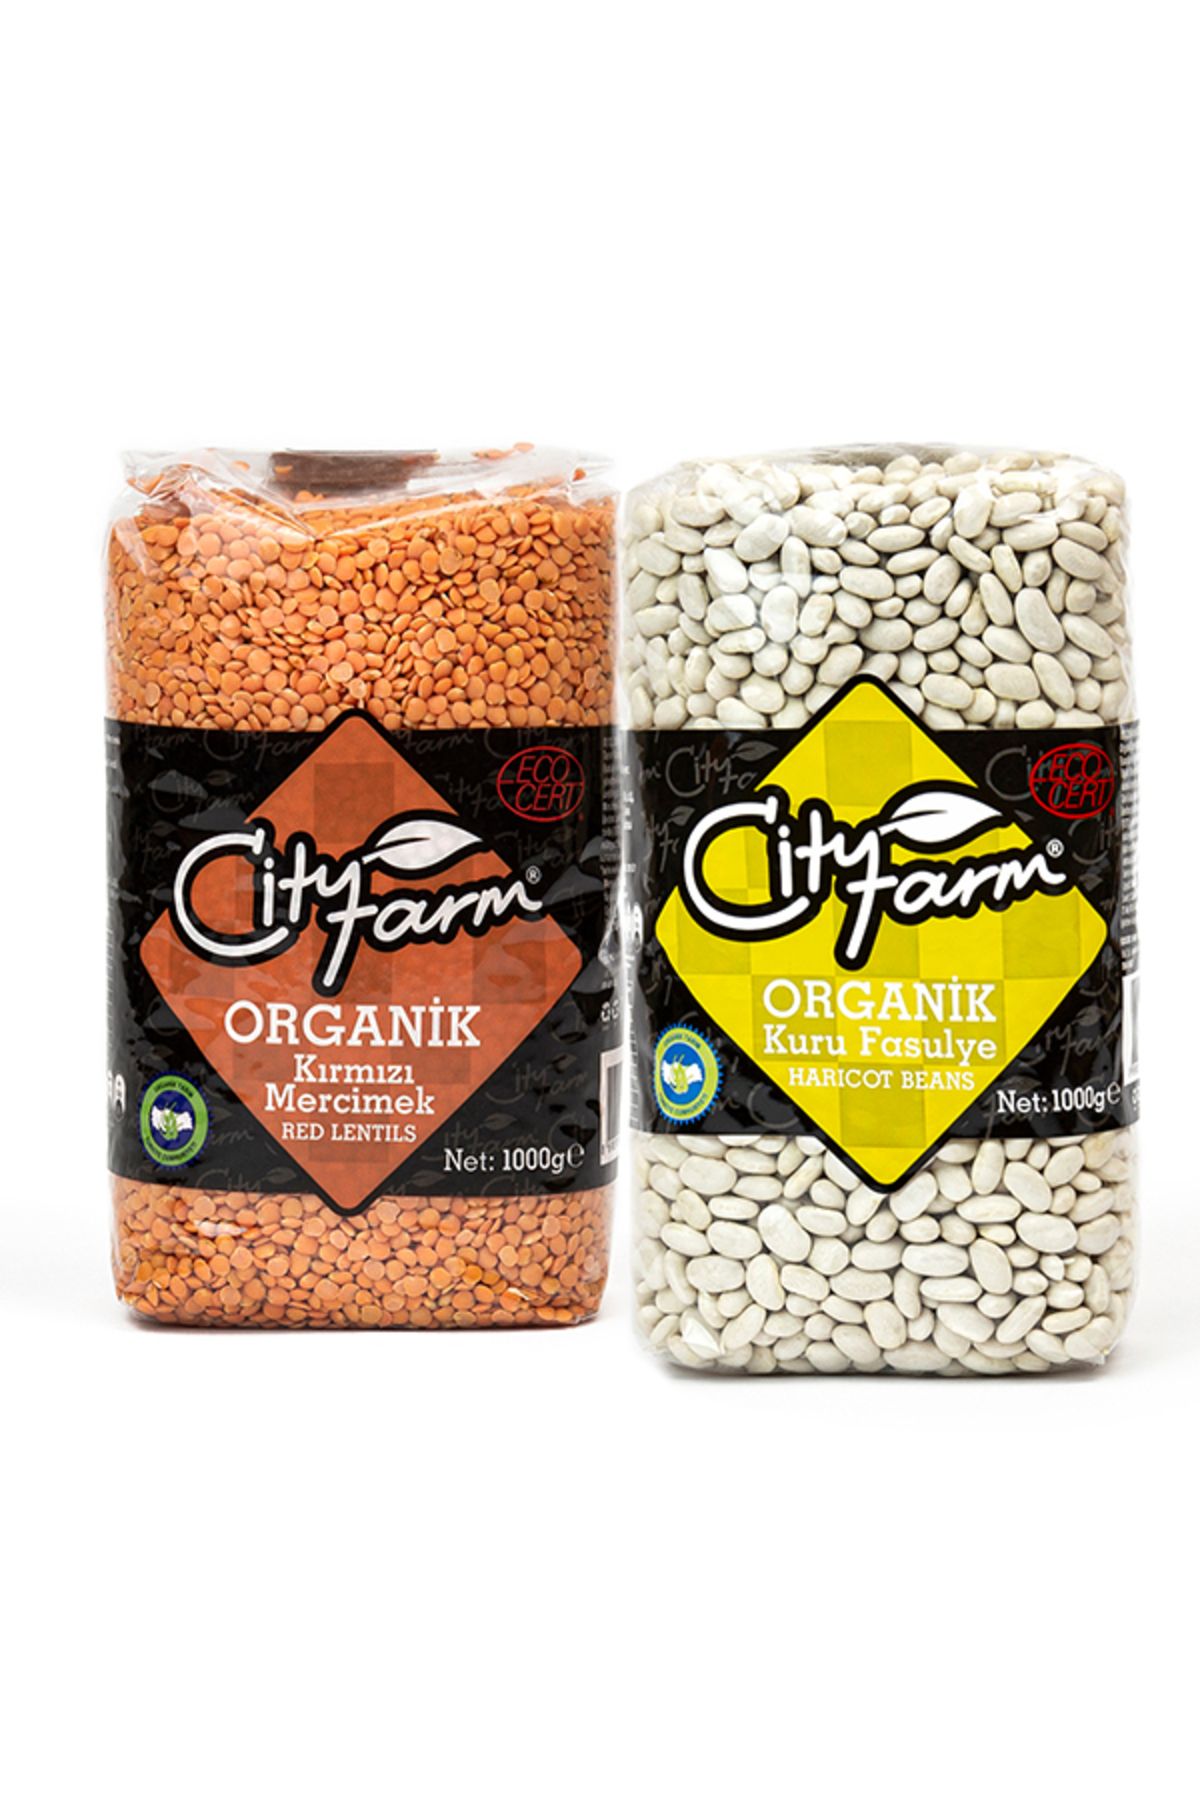 CityFarm Organik Kırmızı Mercimek 1 kg ve Organik Kuru Fasulye 1 kg